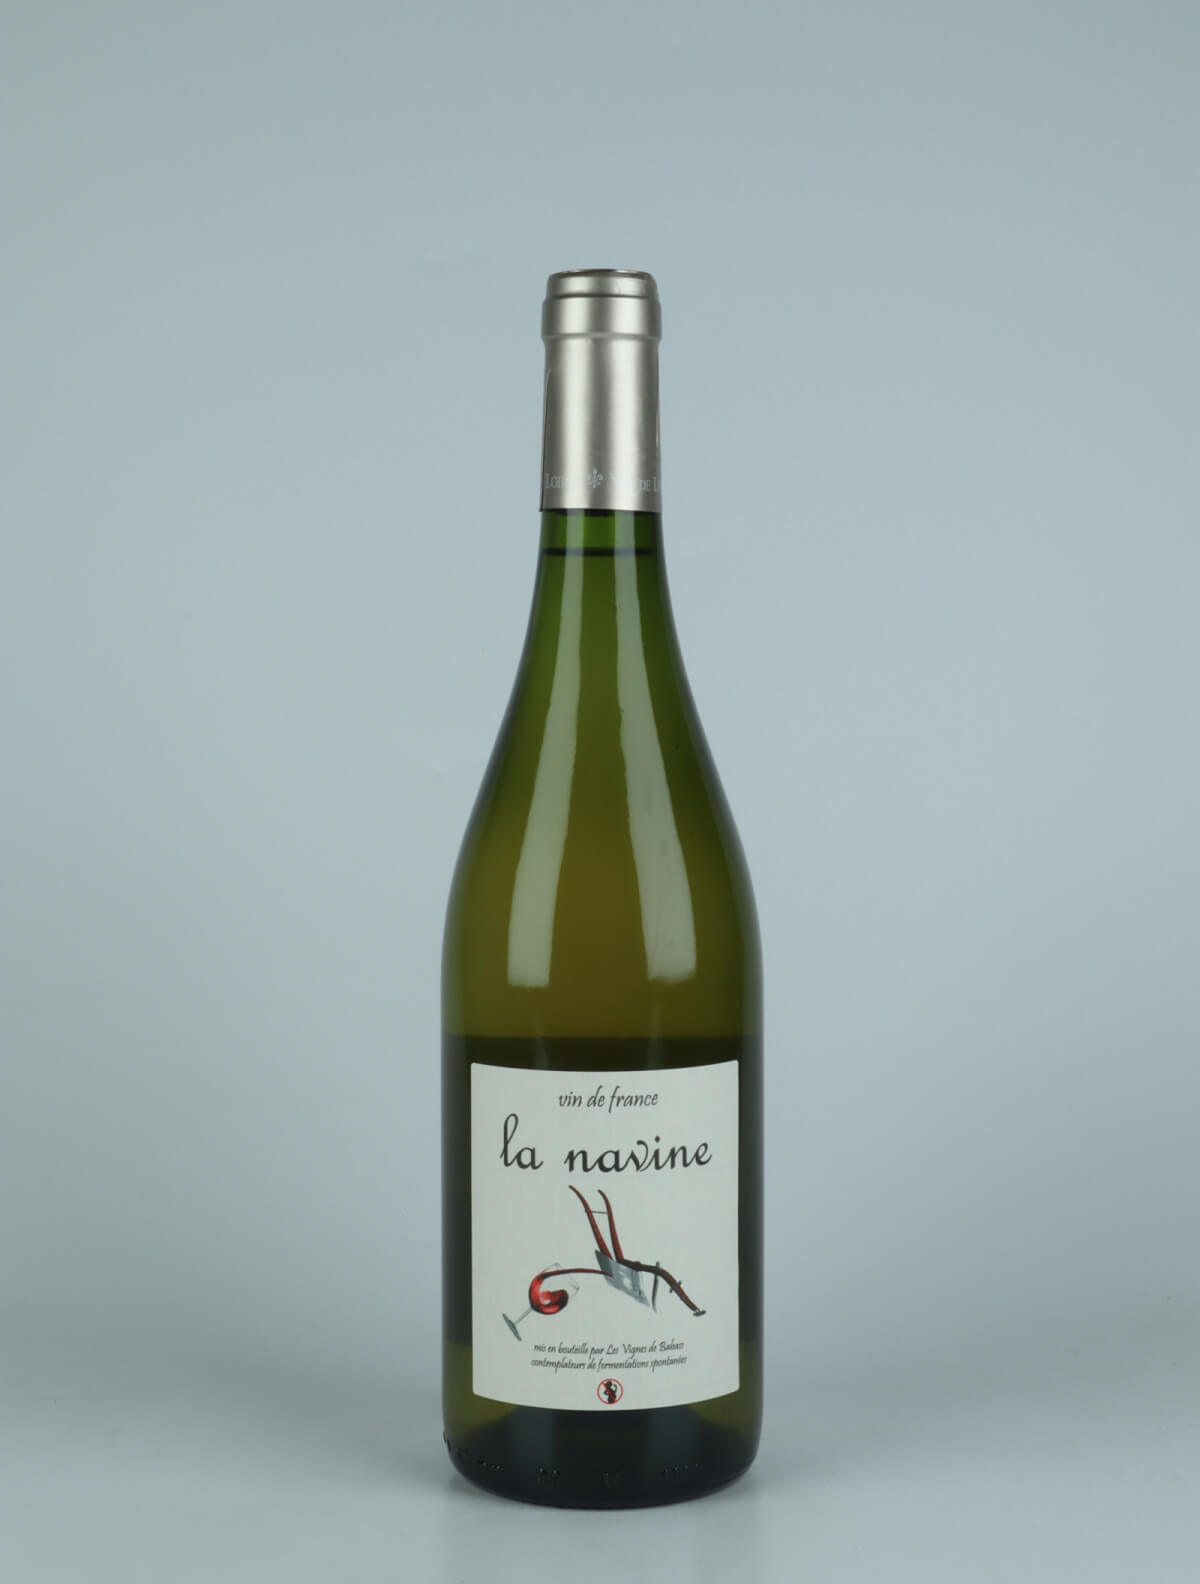 En flaske 2020 Navine Hvidvin fra Les Vignes de Babass, Loire i Frankrig